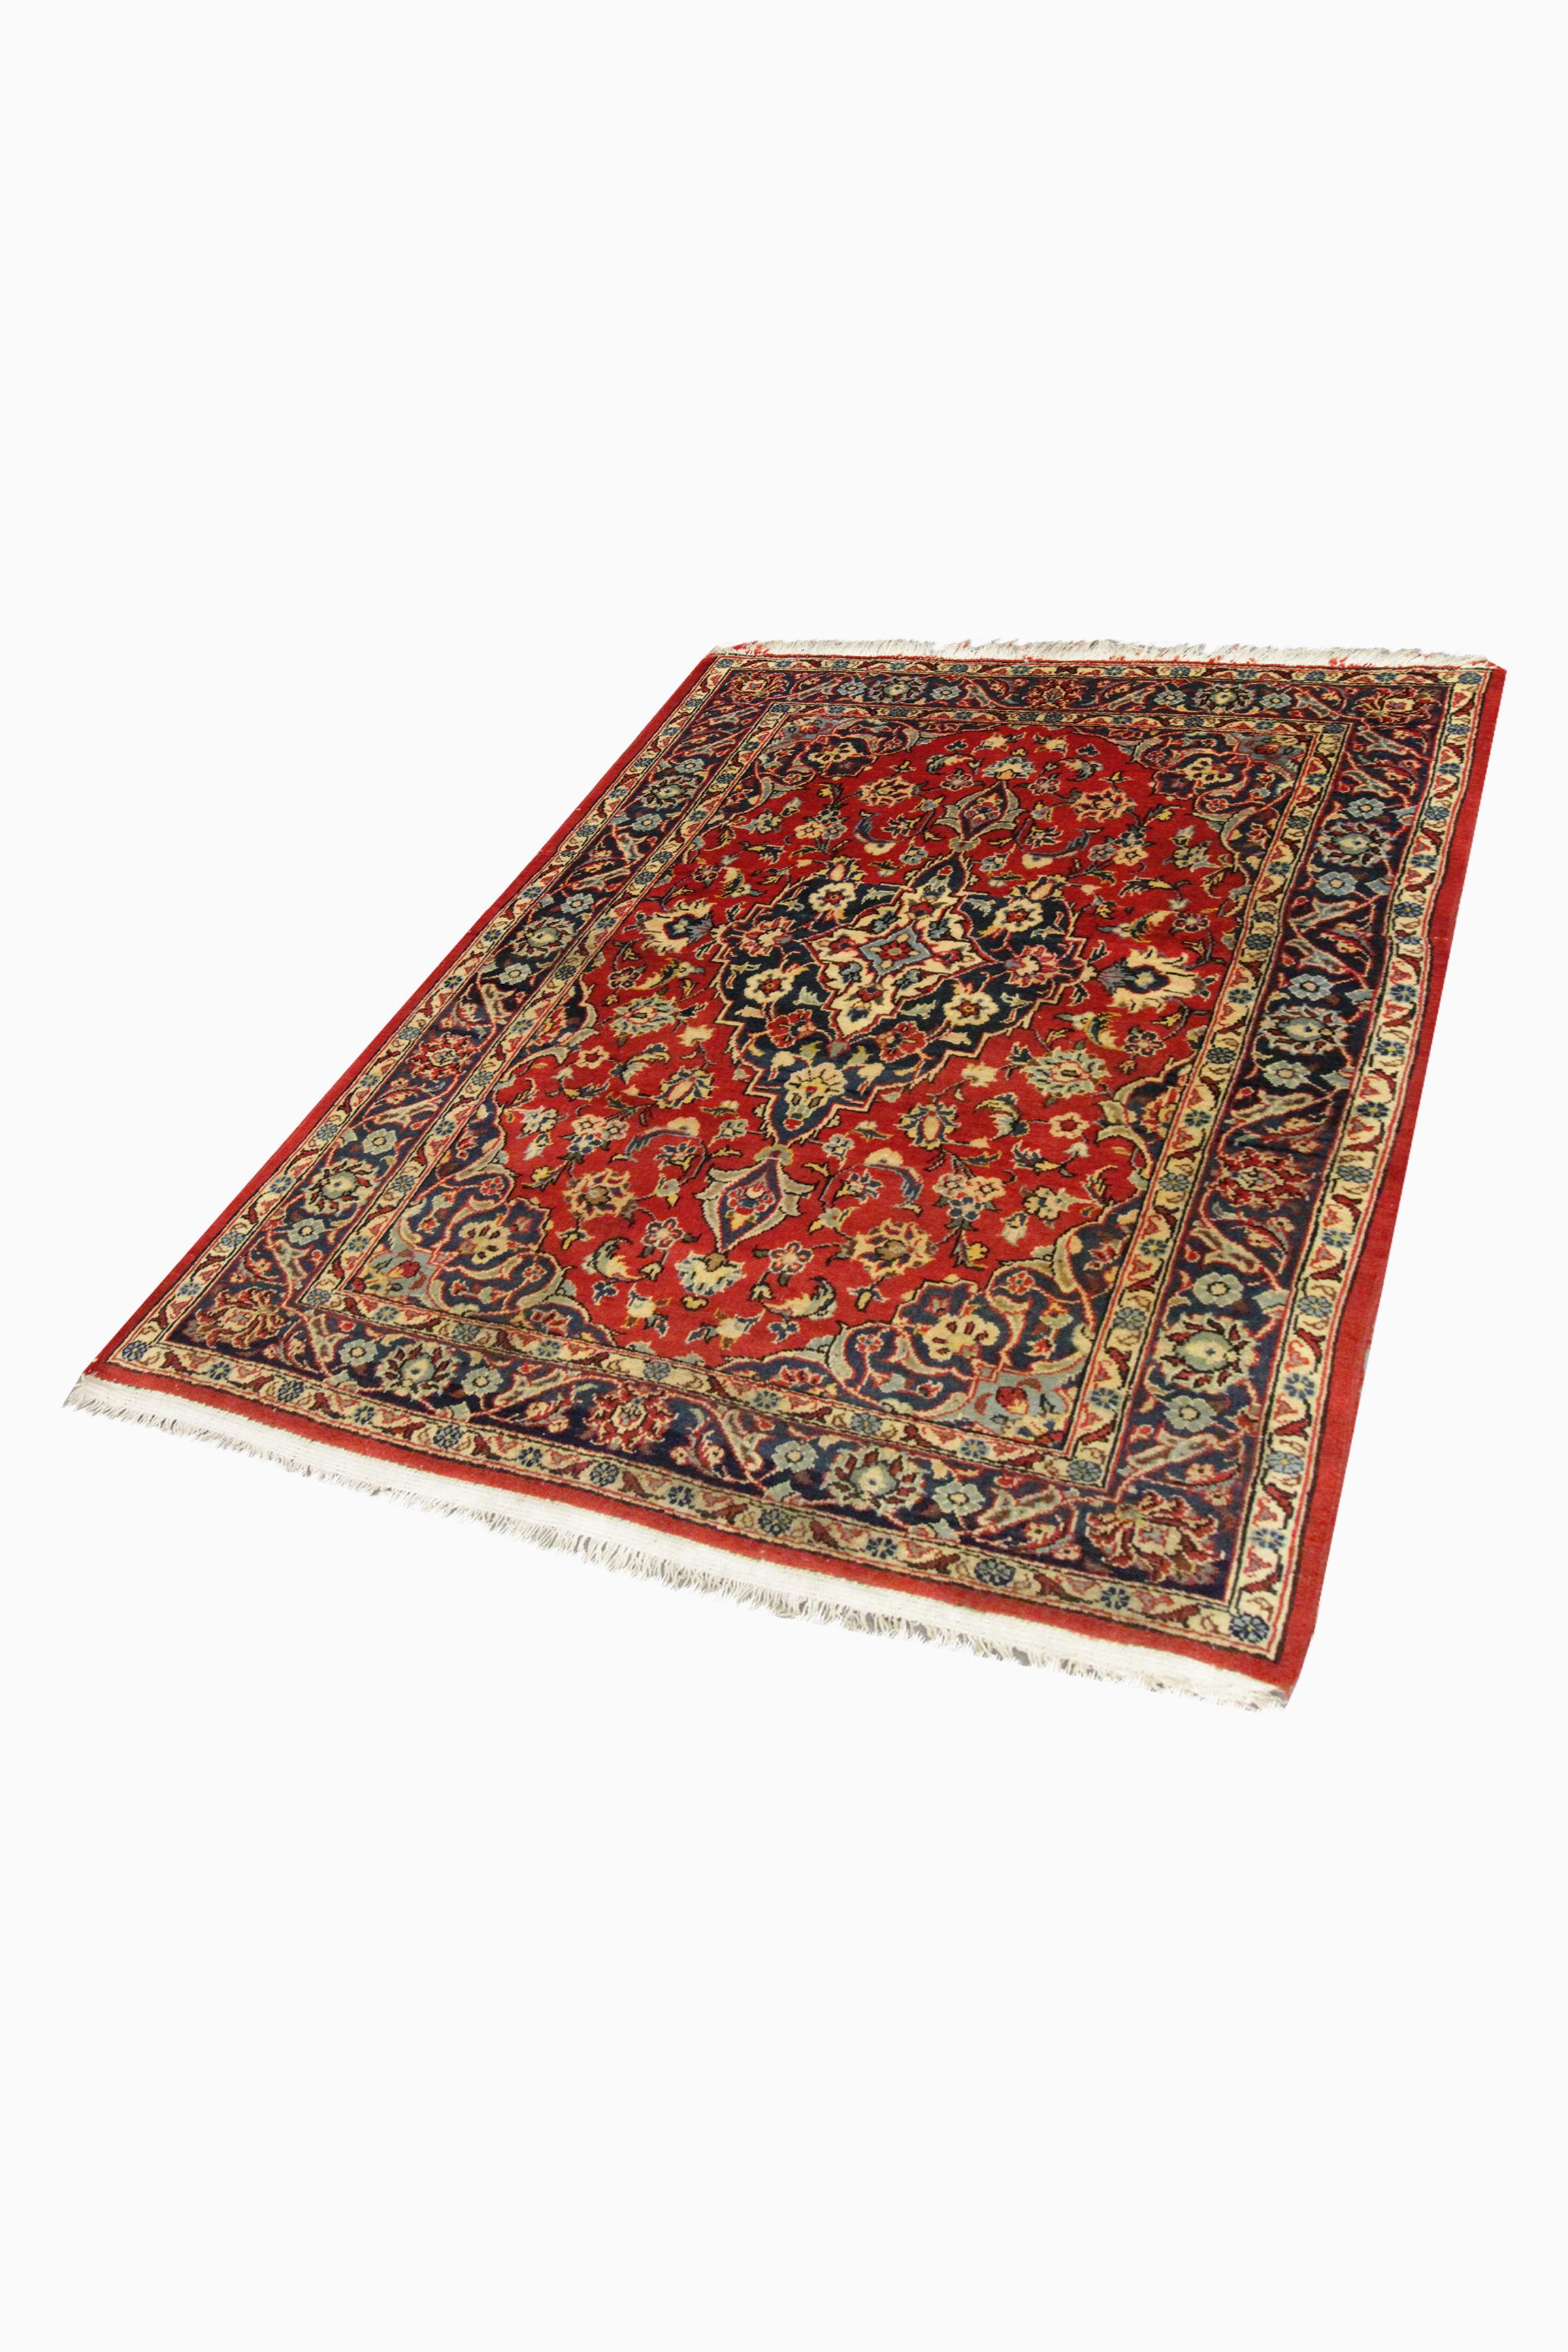 Dieser feine, handgewebte Teppich aus orientalischer Wolle ist ein fantastisches Beispiel für Vintage-Teppiche, die Mitte des 20. Das Muster wurde auf einem satten roten Hintergrund mit blauen, beigen, rostfarbenen und grünen Akzenten gewebt, die